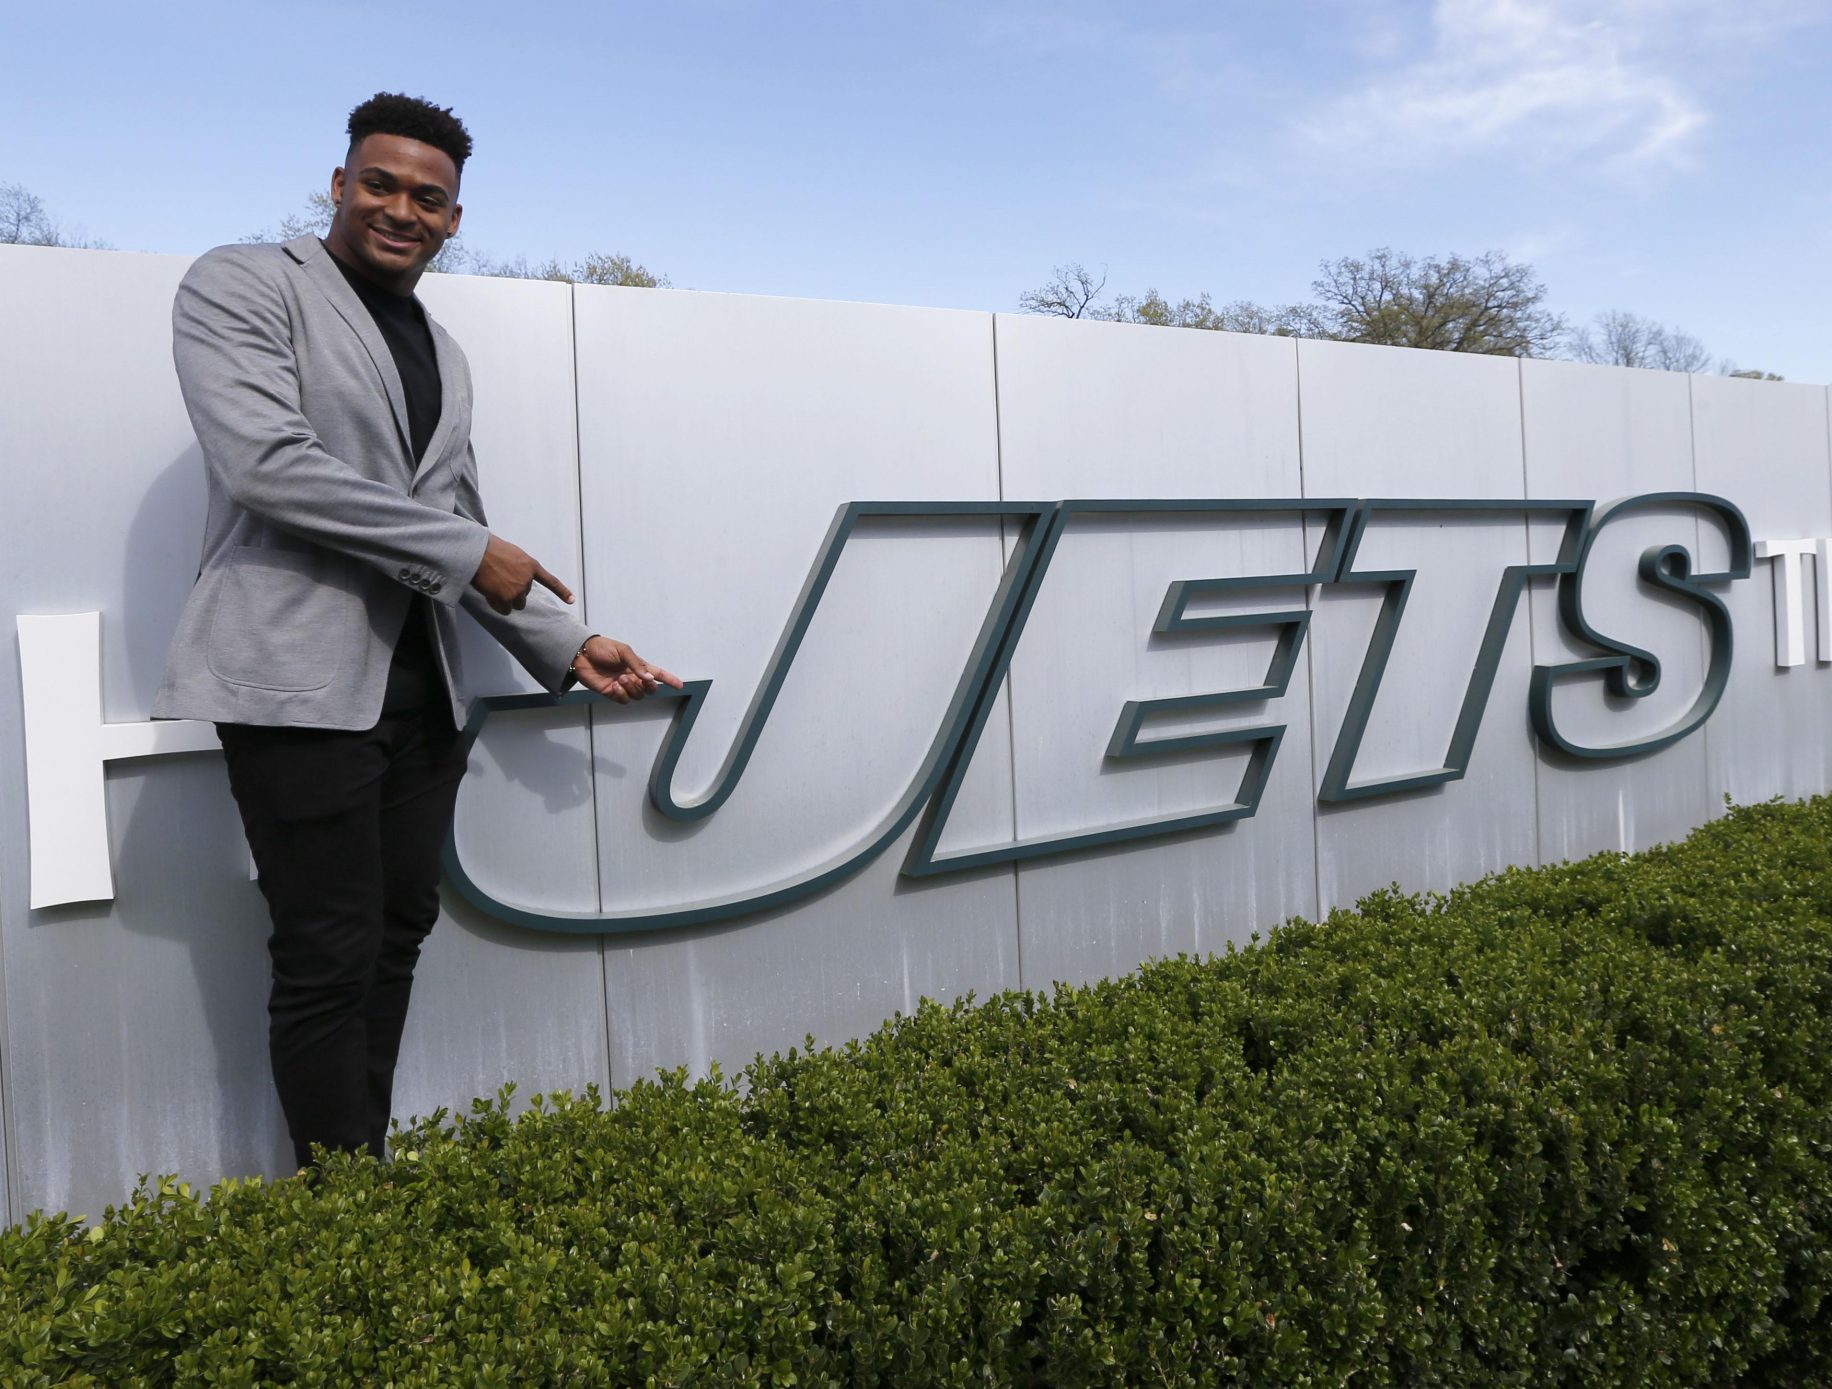 The Likelihood That New York Jets Rookie Jamal Adams Struggles in 2017 is Sky High 